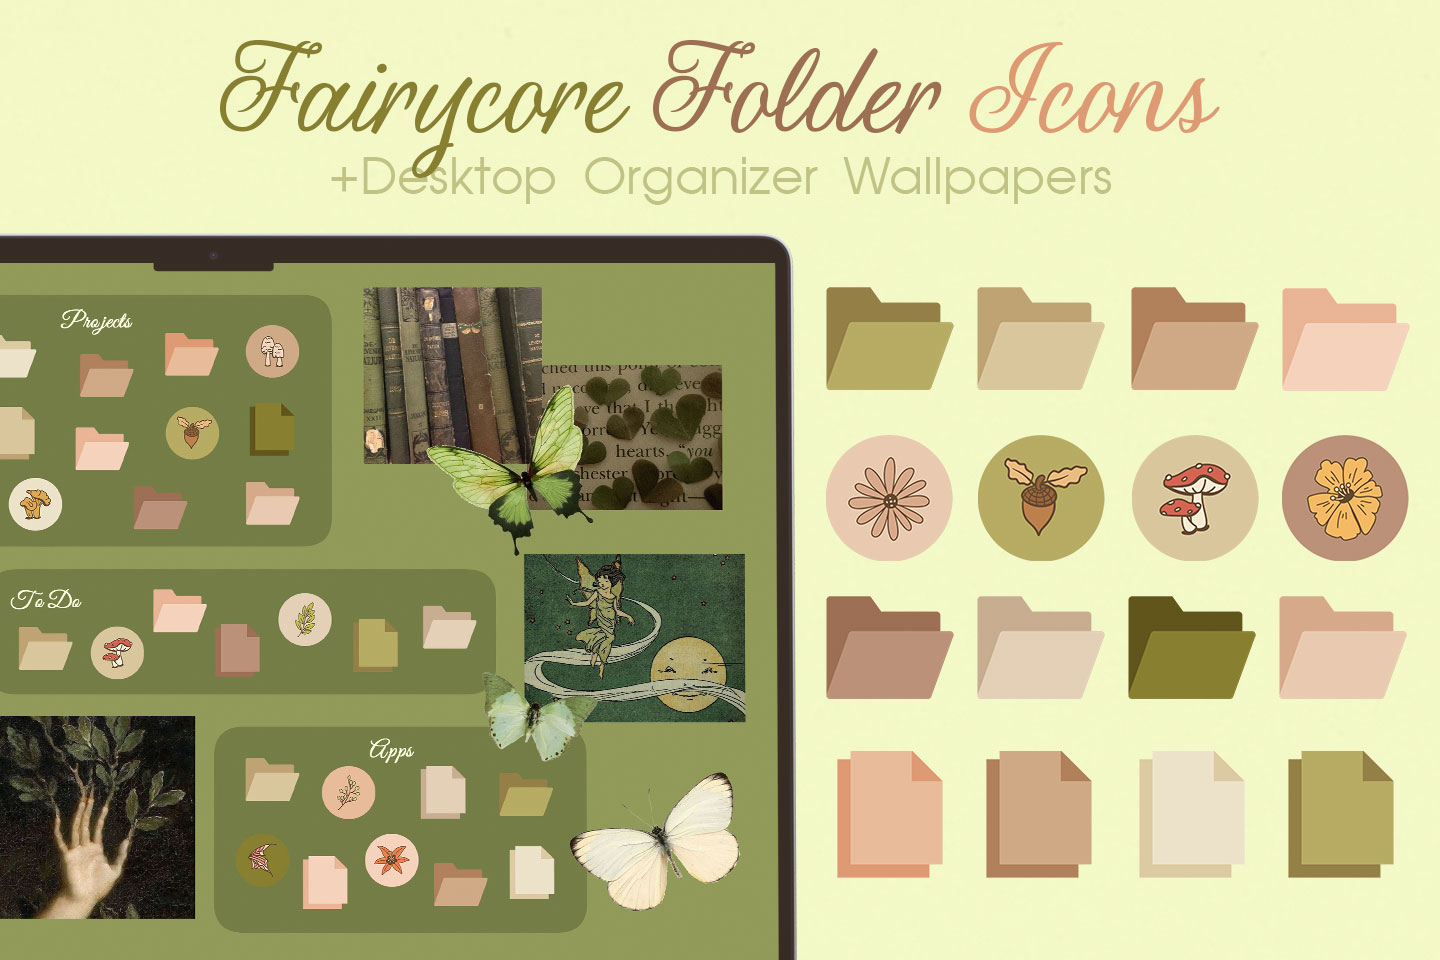 Paquete de iconos de carpeta Fairycore